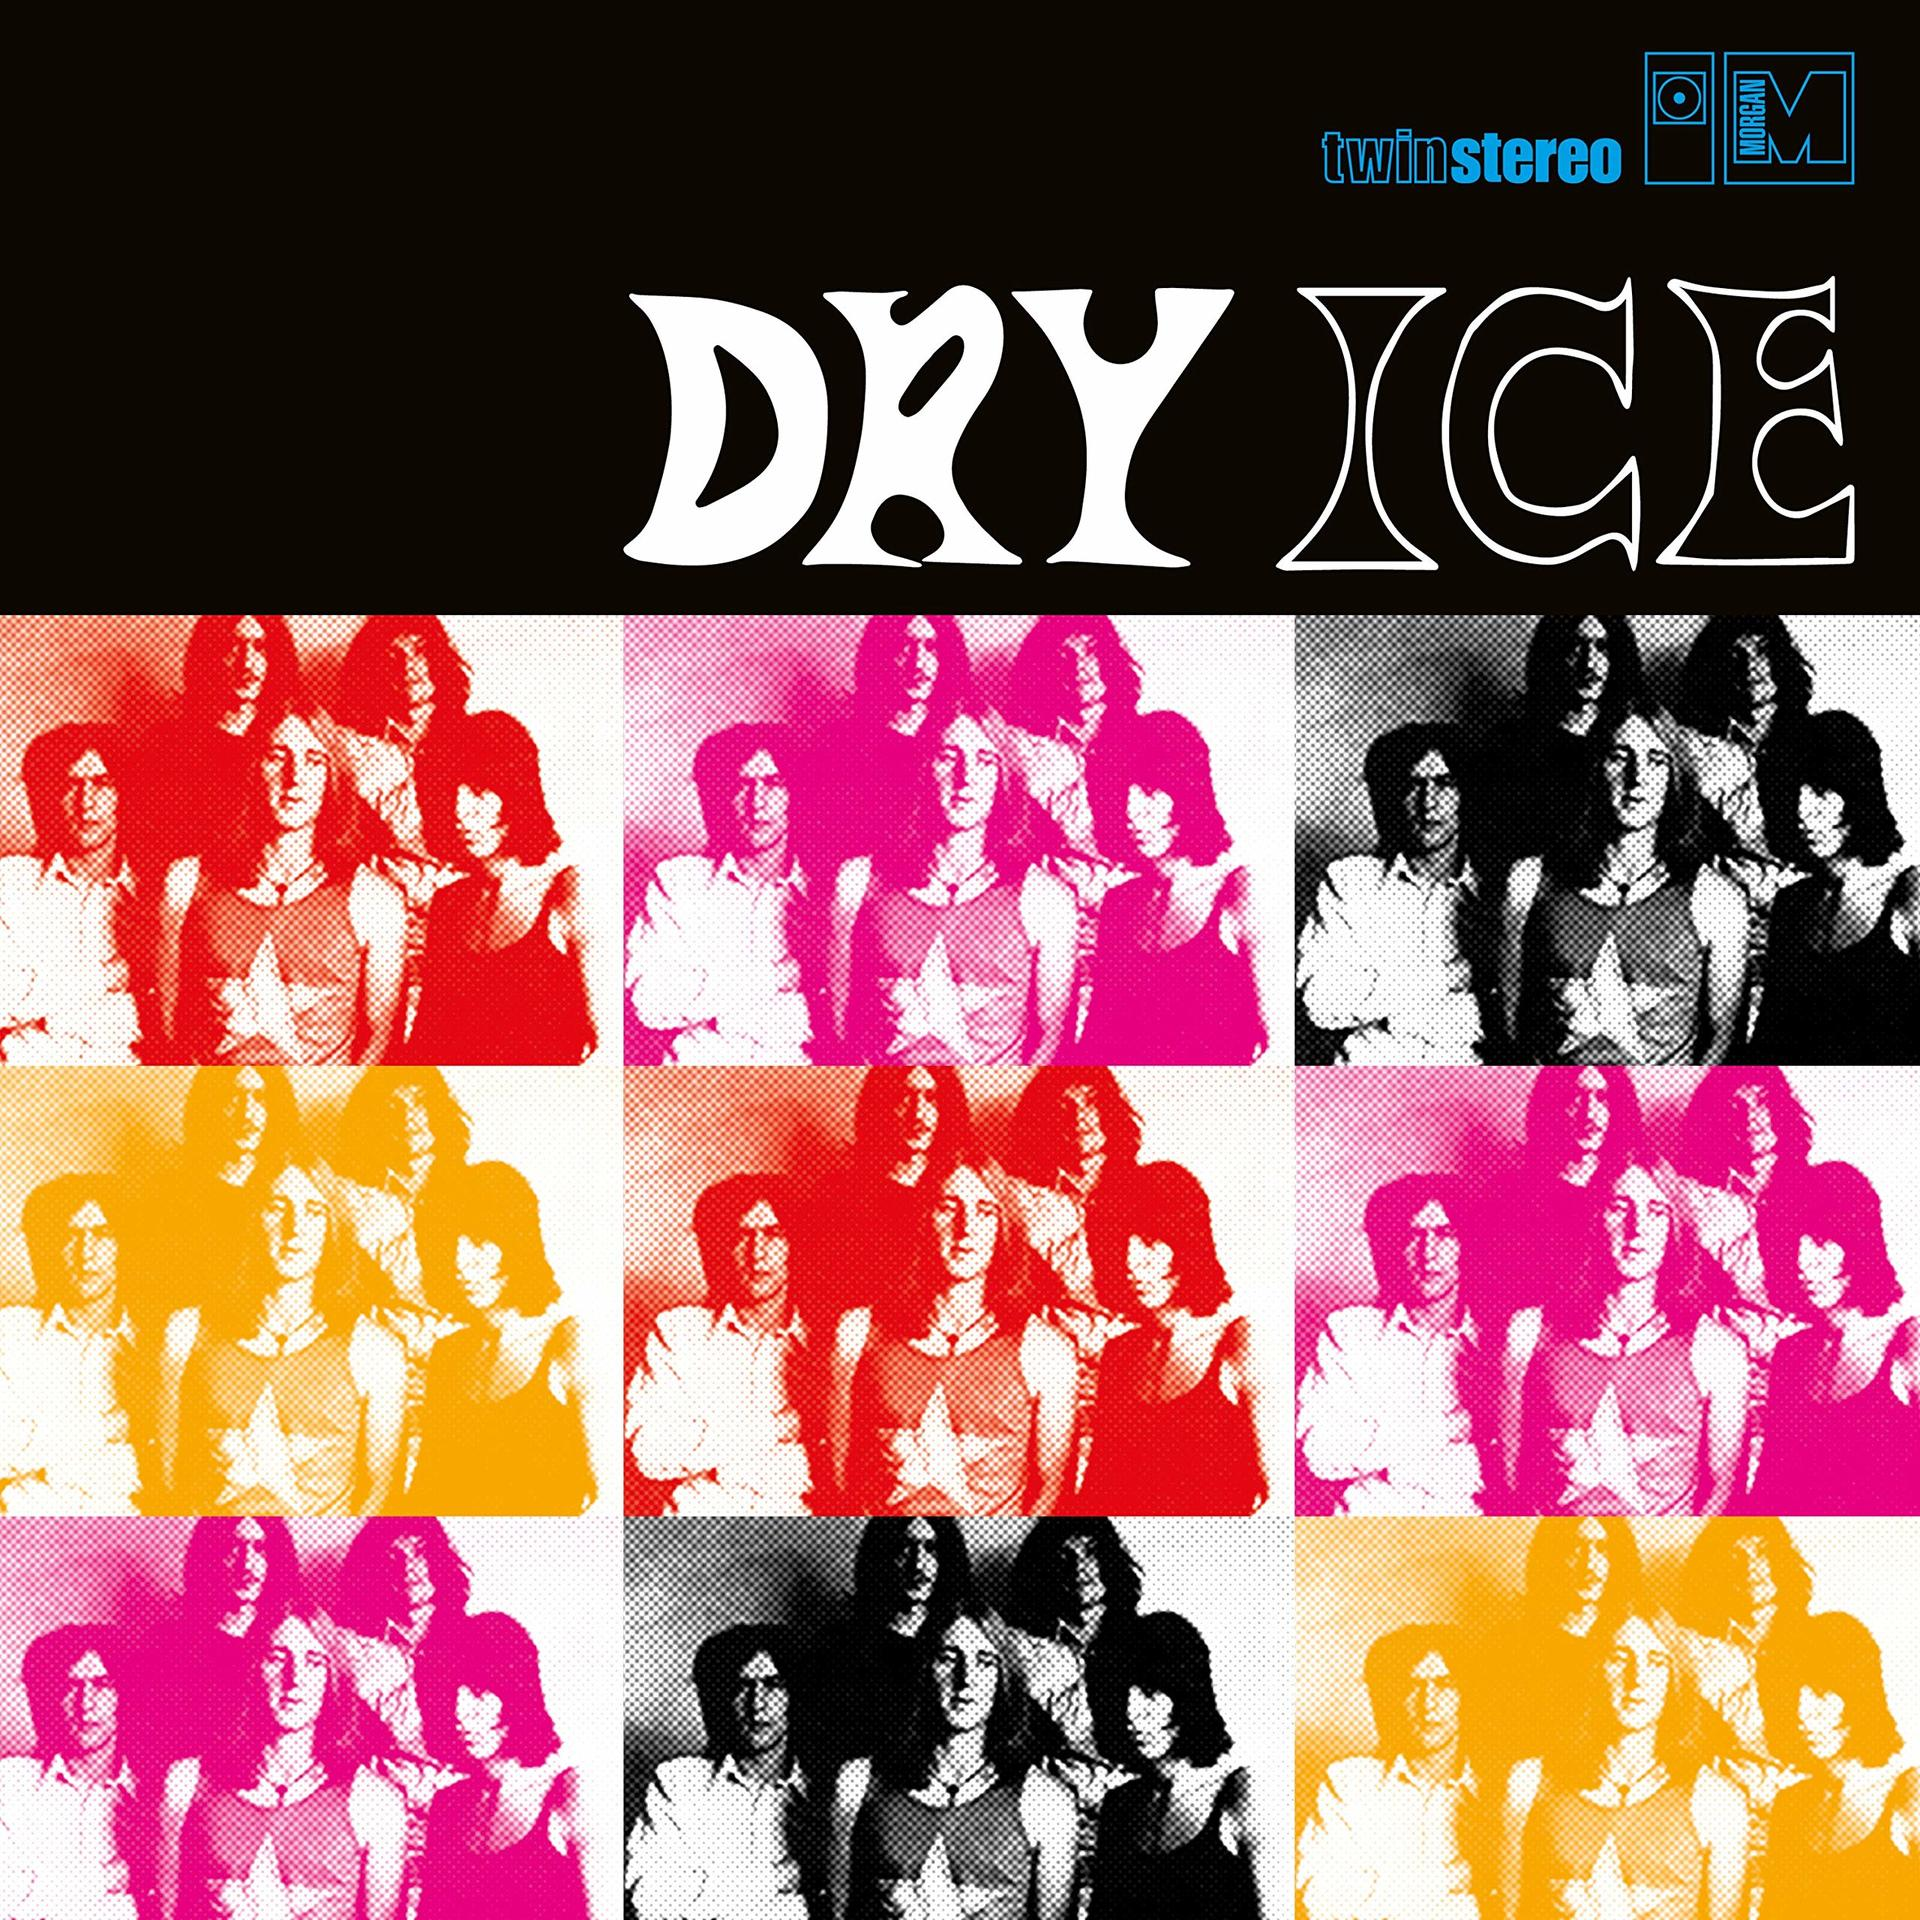 Dry Ice - Dry Ice (CD) 